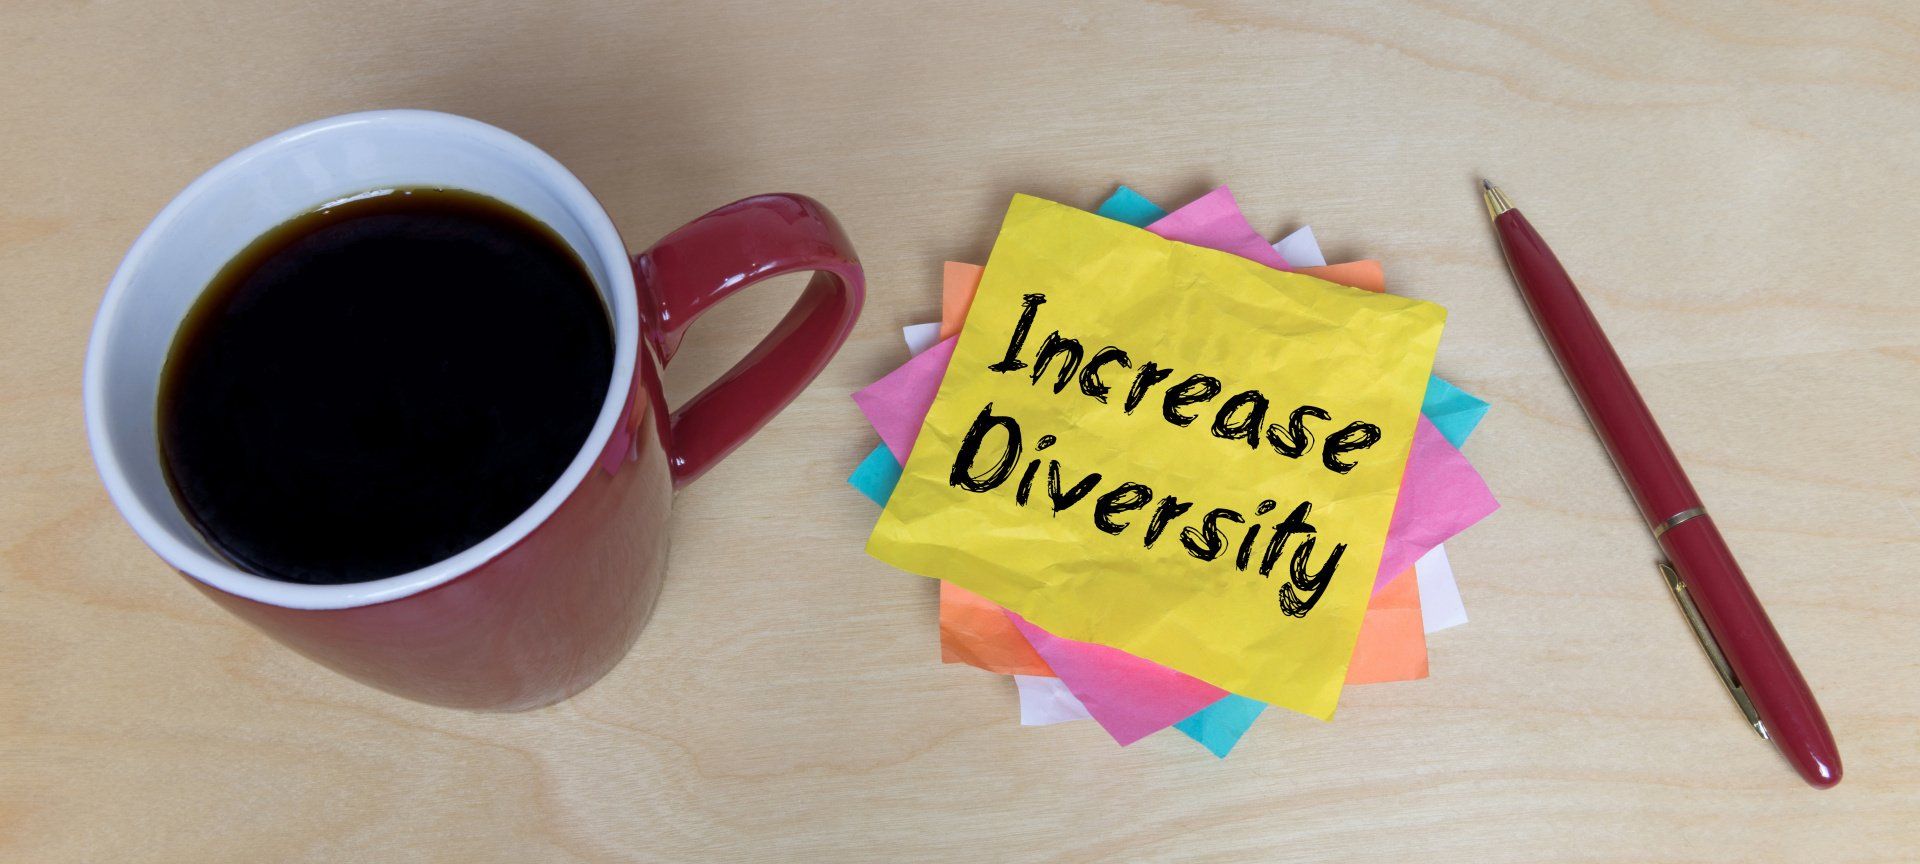 Increase Diversity auf einem Zettel neben einer Tasse Kaffee